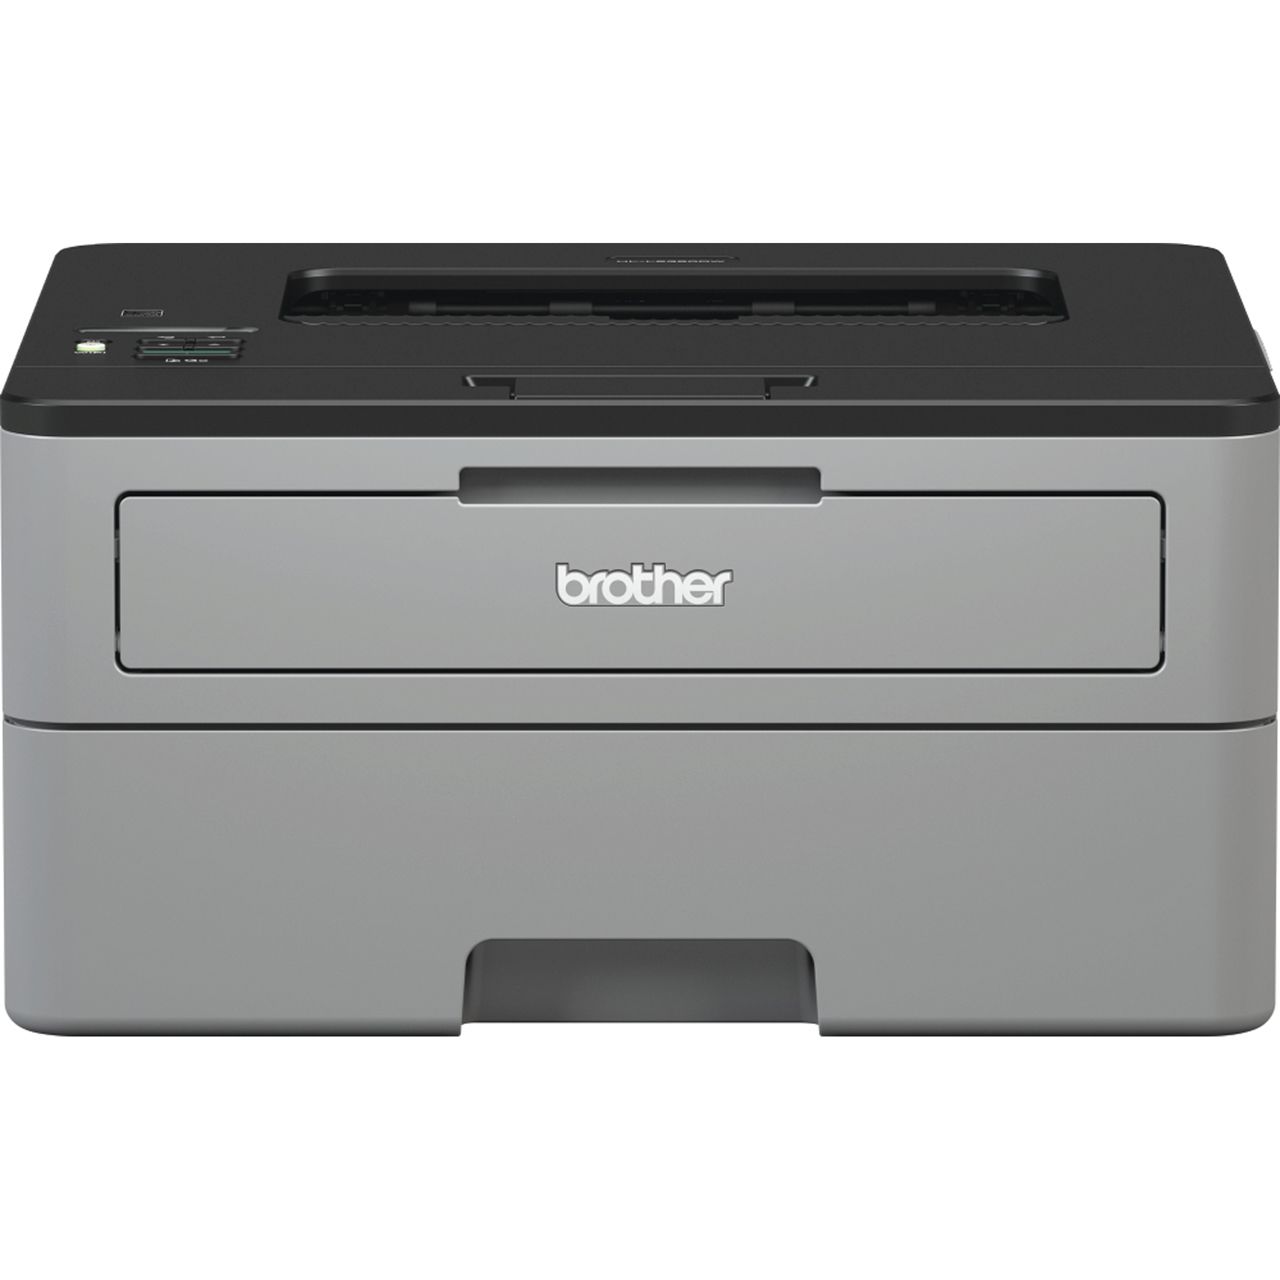 Brother HL-L2350DW Laser Printer Review